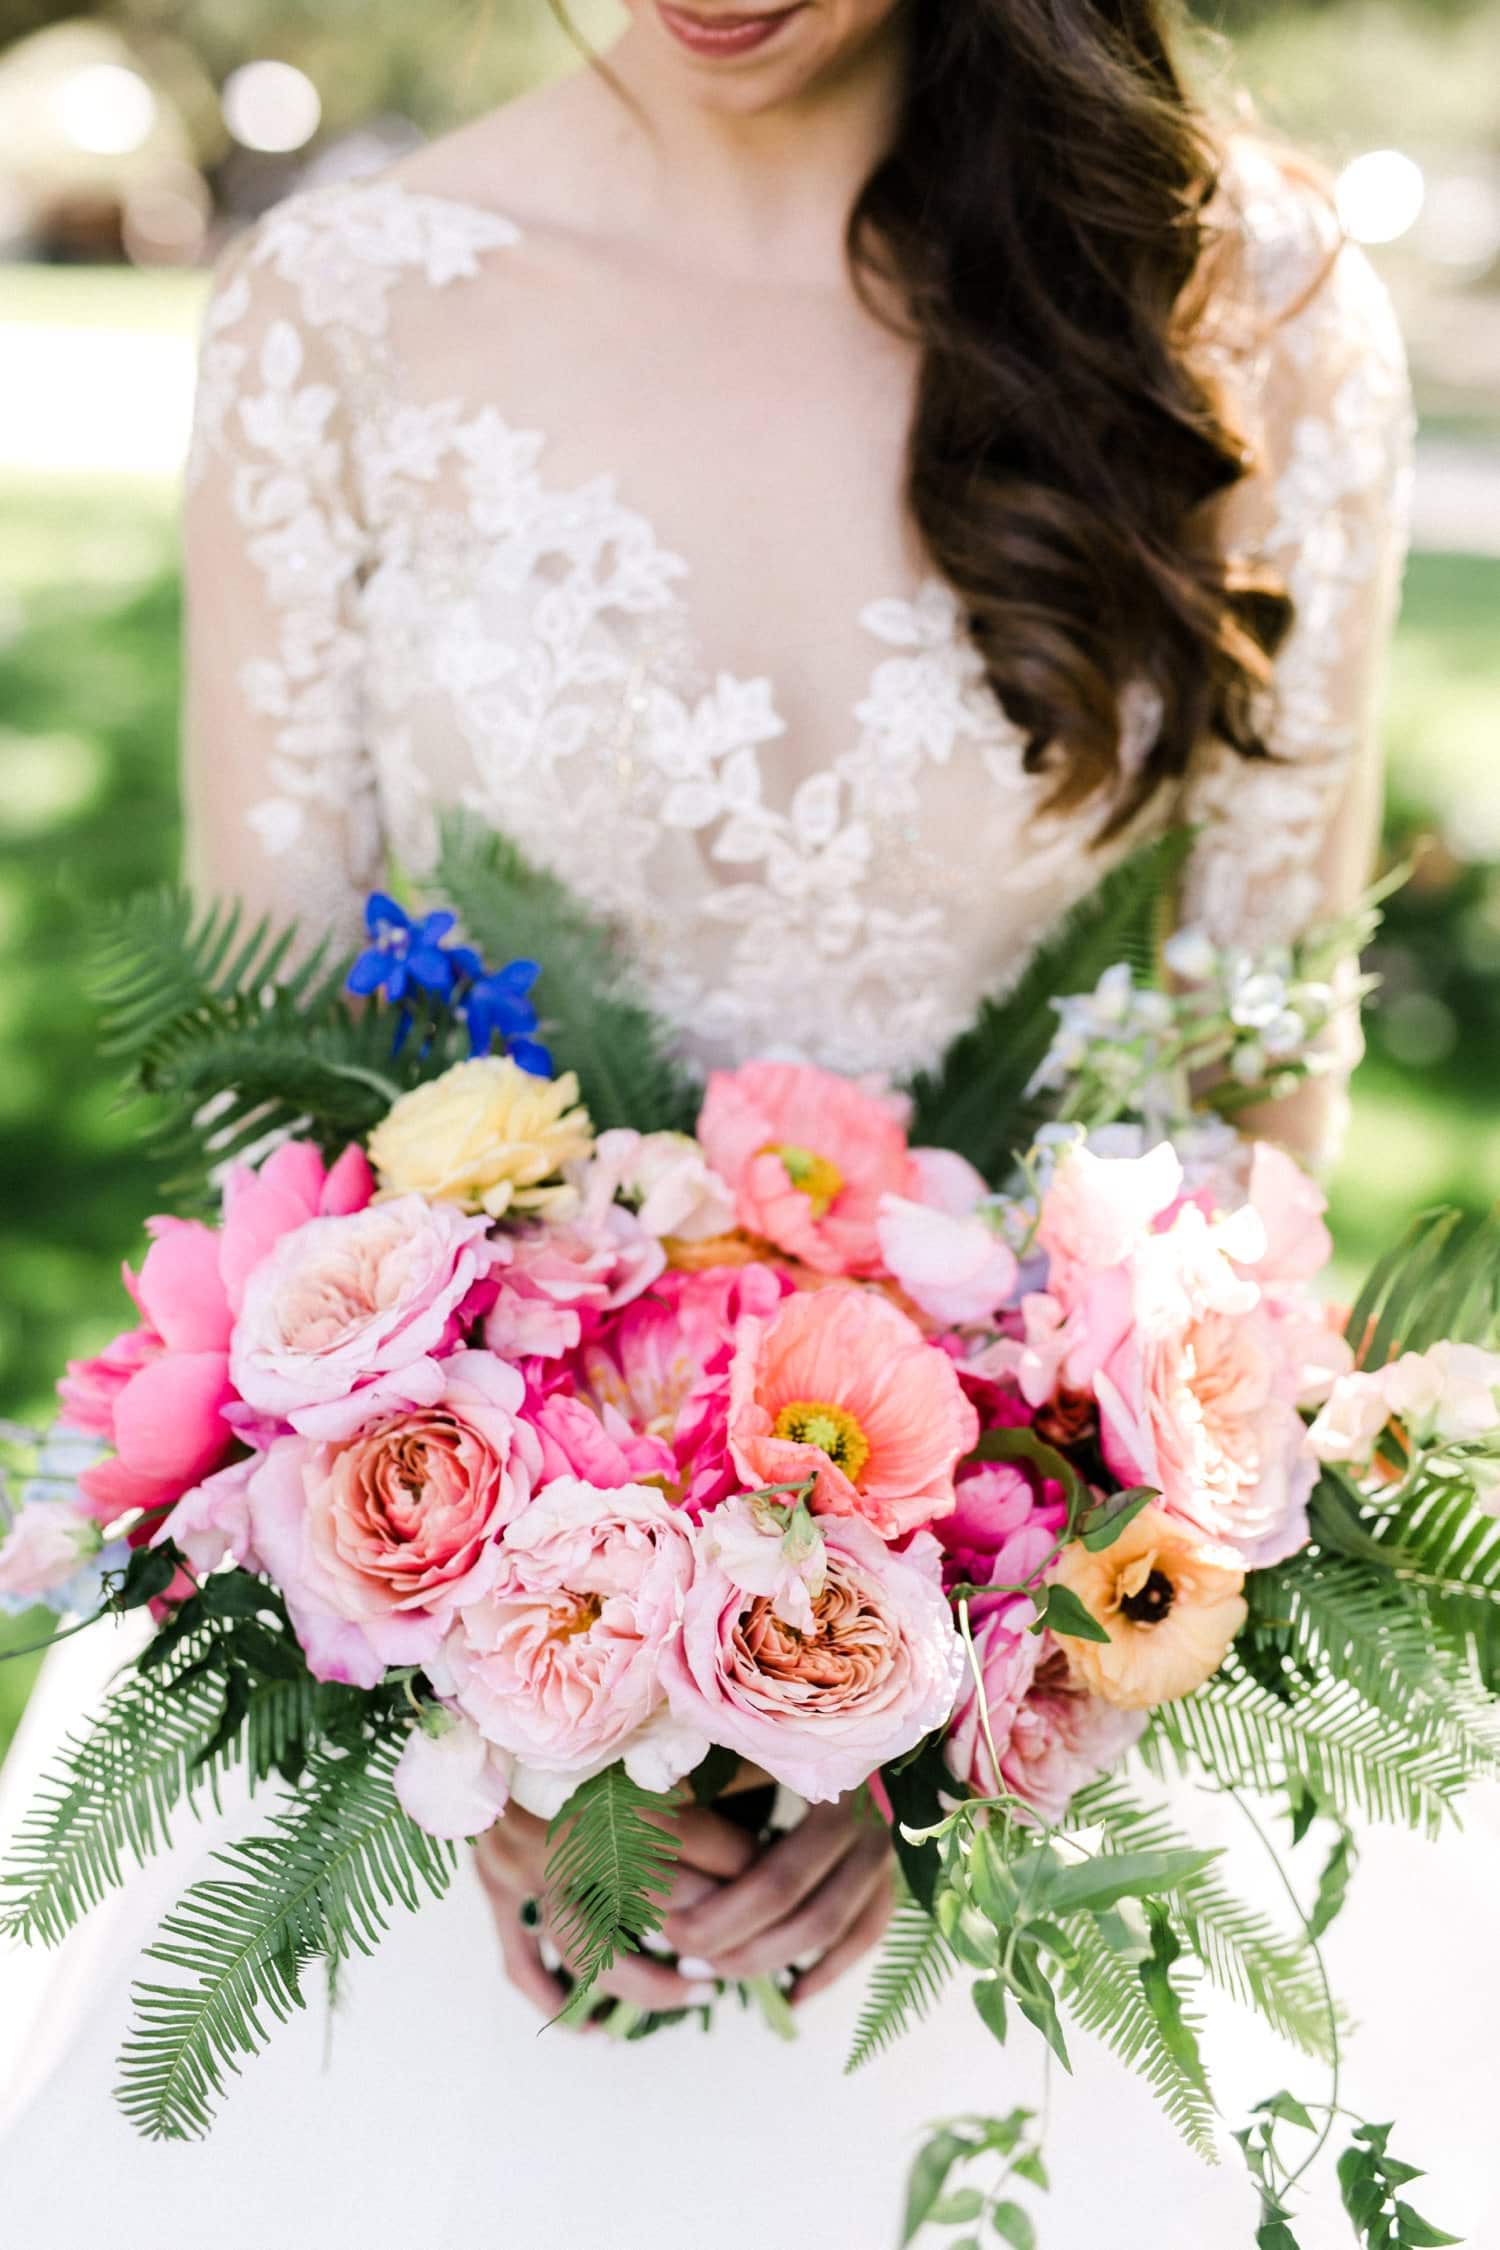 Colorful bridal bouquet flowers